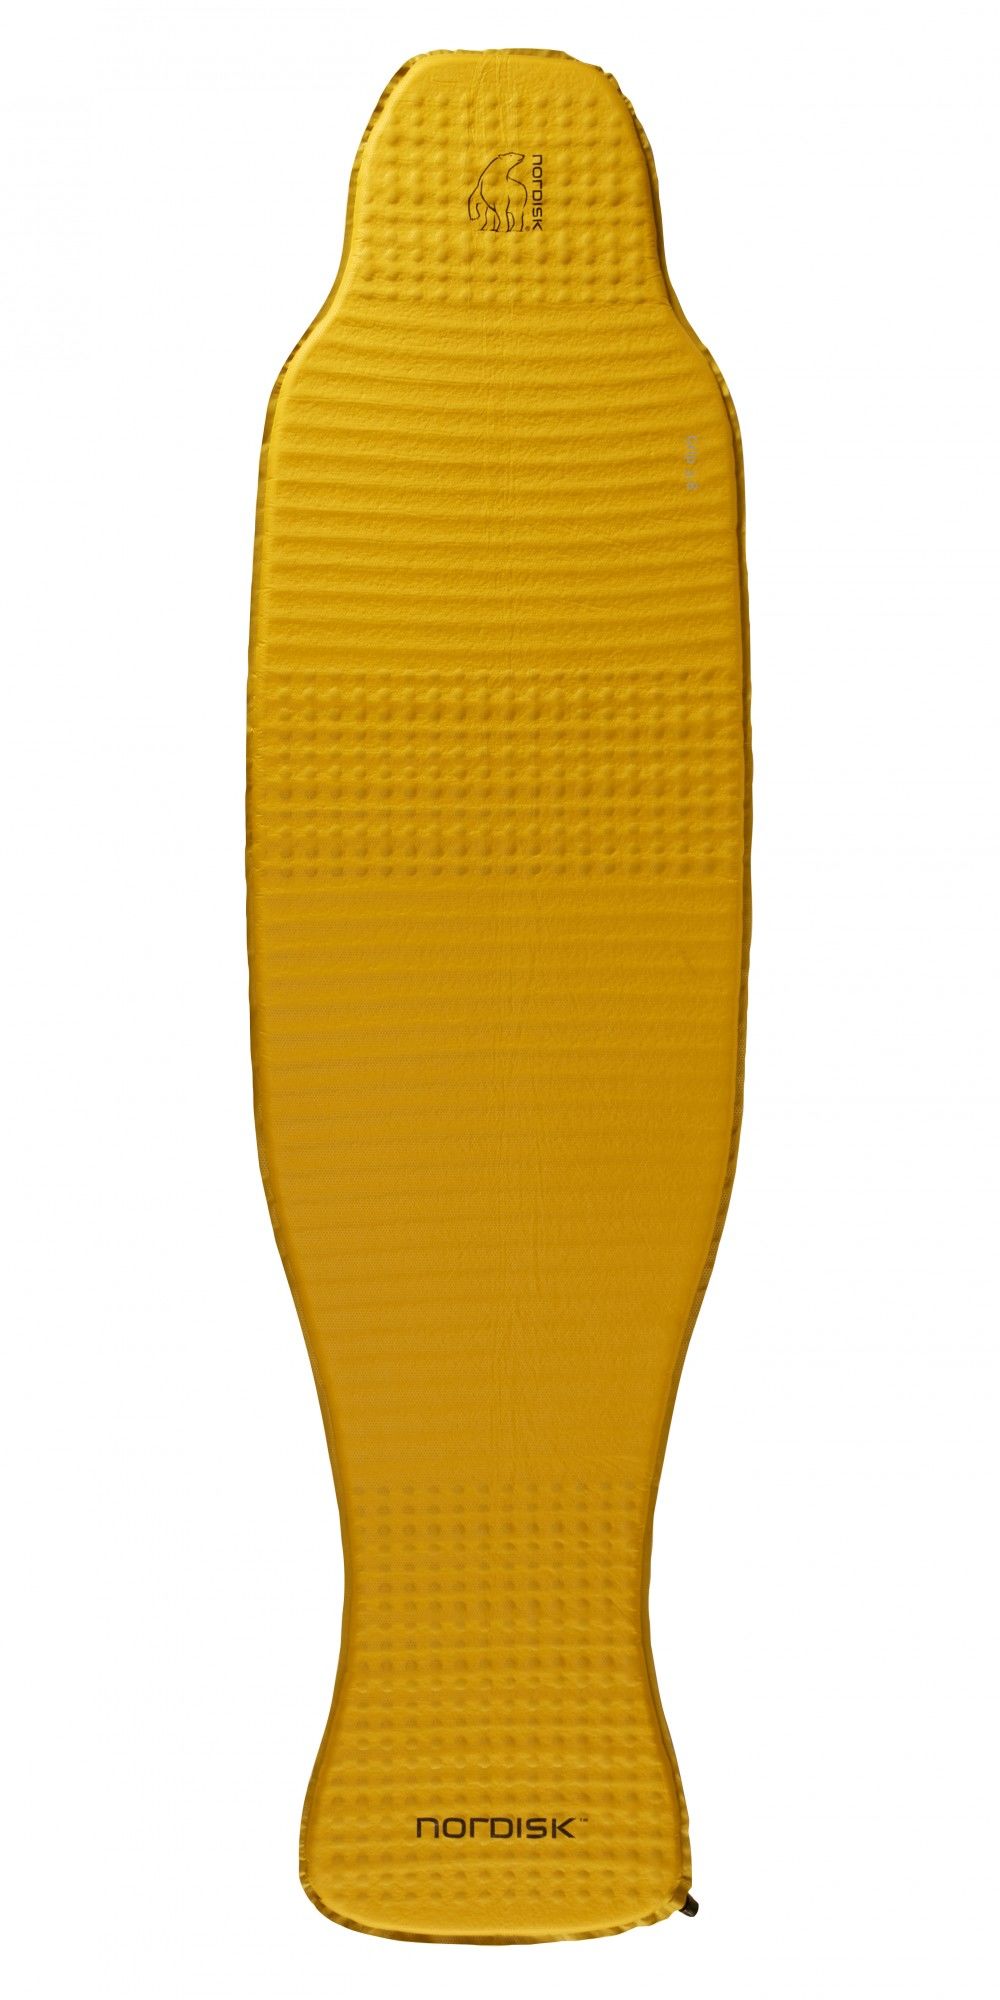 Nordisk Grip 3.8 Long Gelb | Größe 193 cm |  Schaumstoff-Isomatte